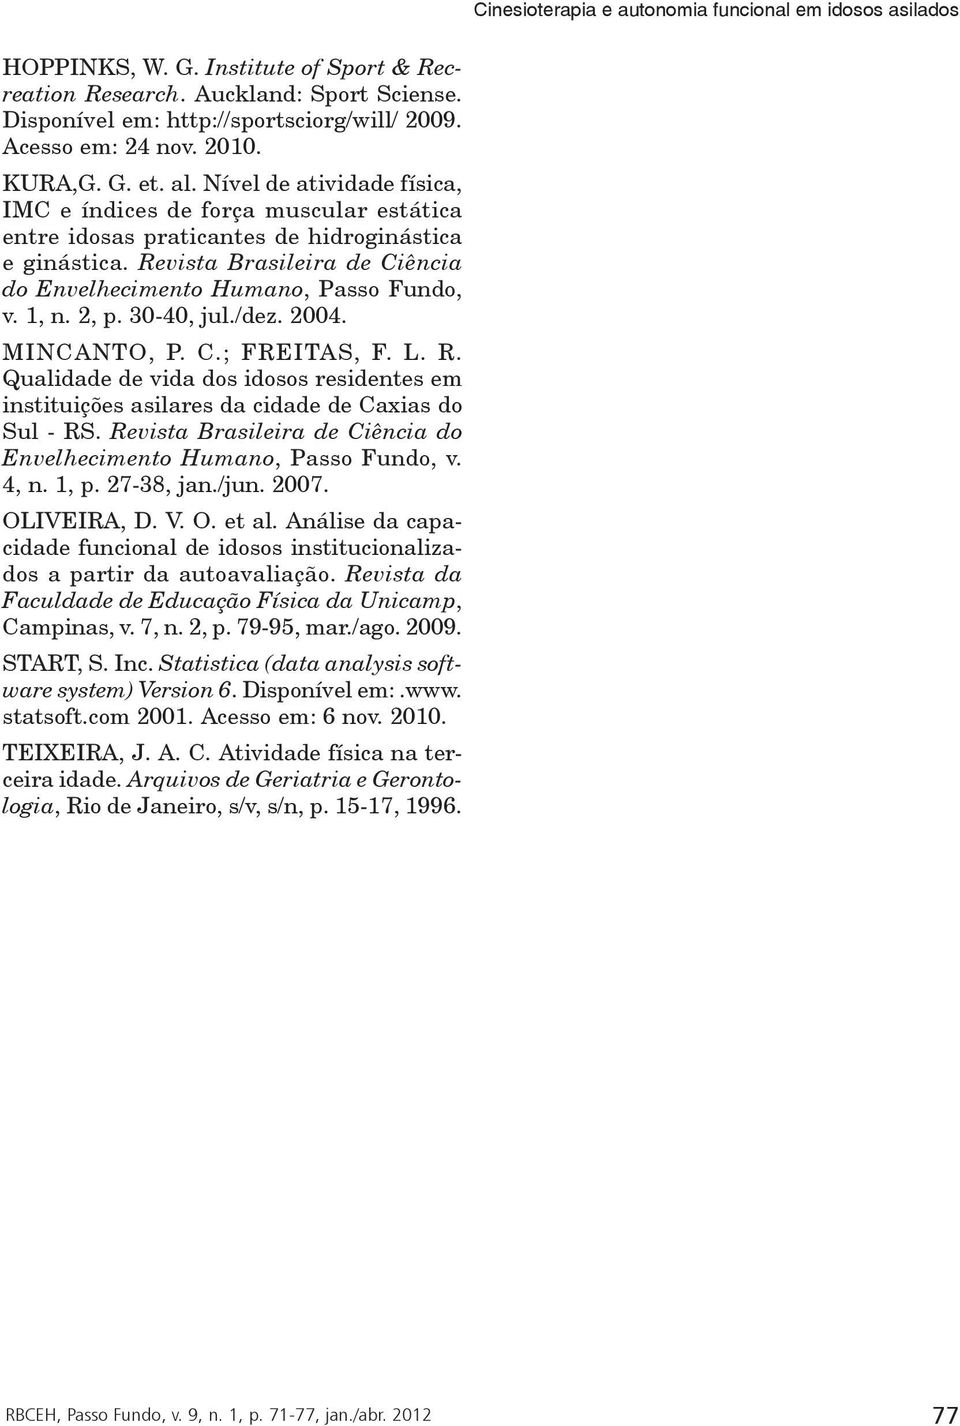 1, n. 2, p. 30-40, jul./dez. 2004. MINCANTO, P. C.; FREITAS, F. L. R. Qualidade de vida dos idosos residentes em instituições asilares da cidade de Caxias do Sul - RS.